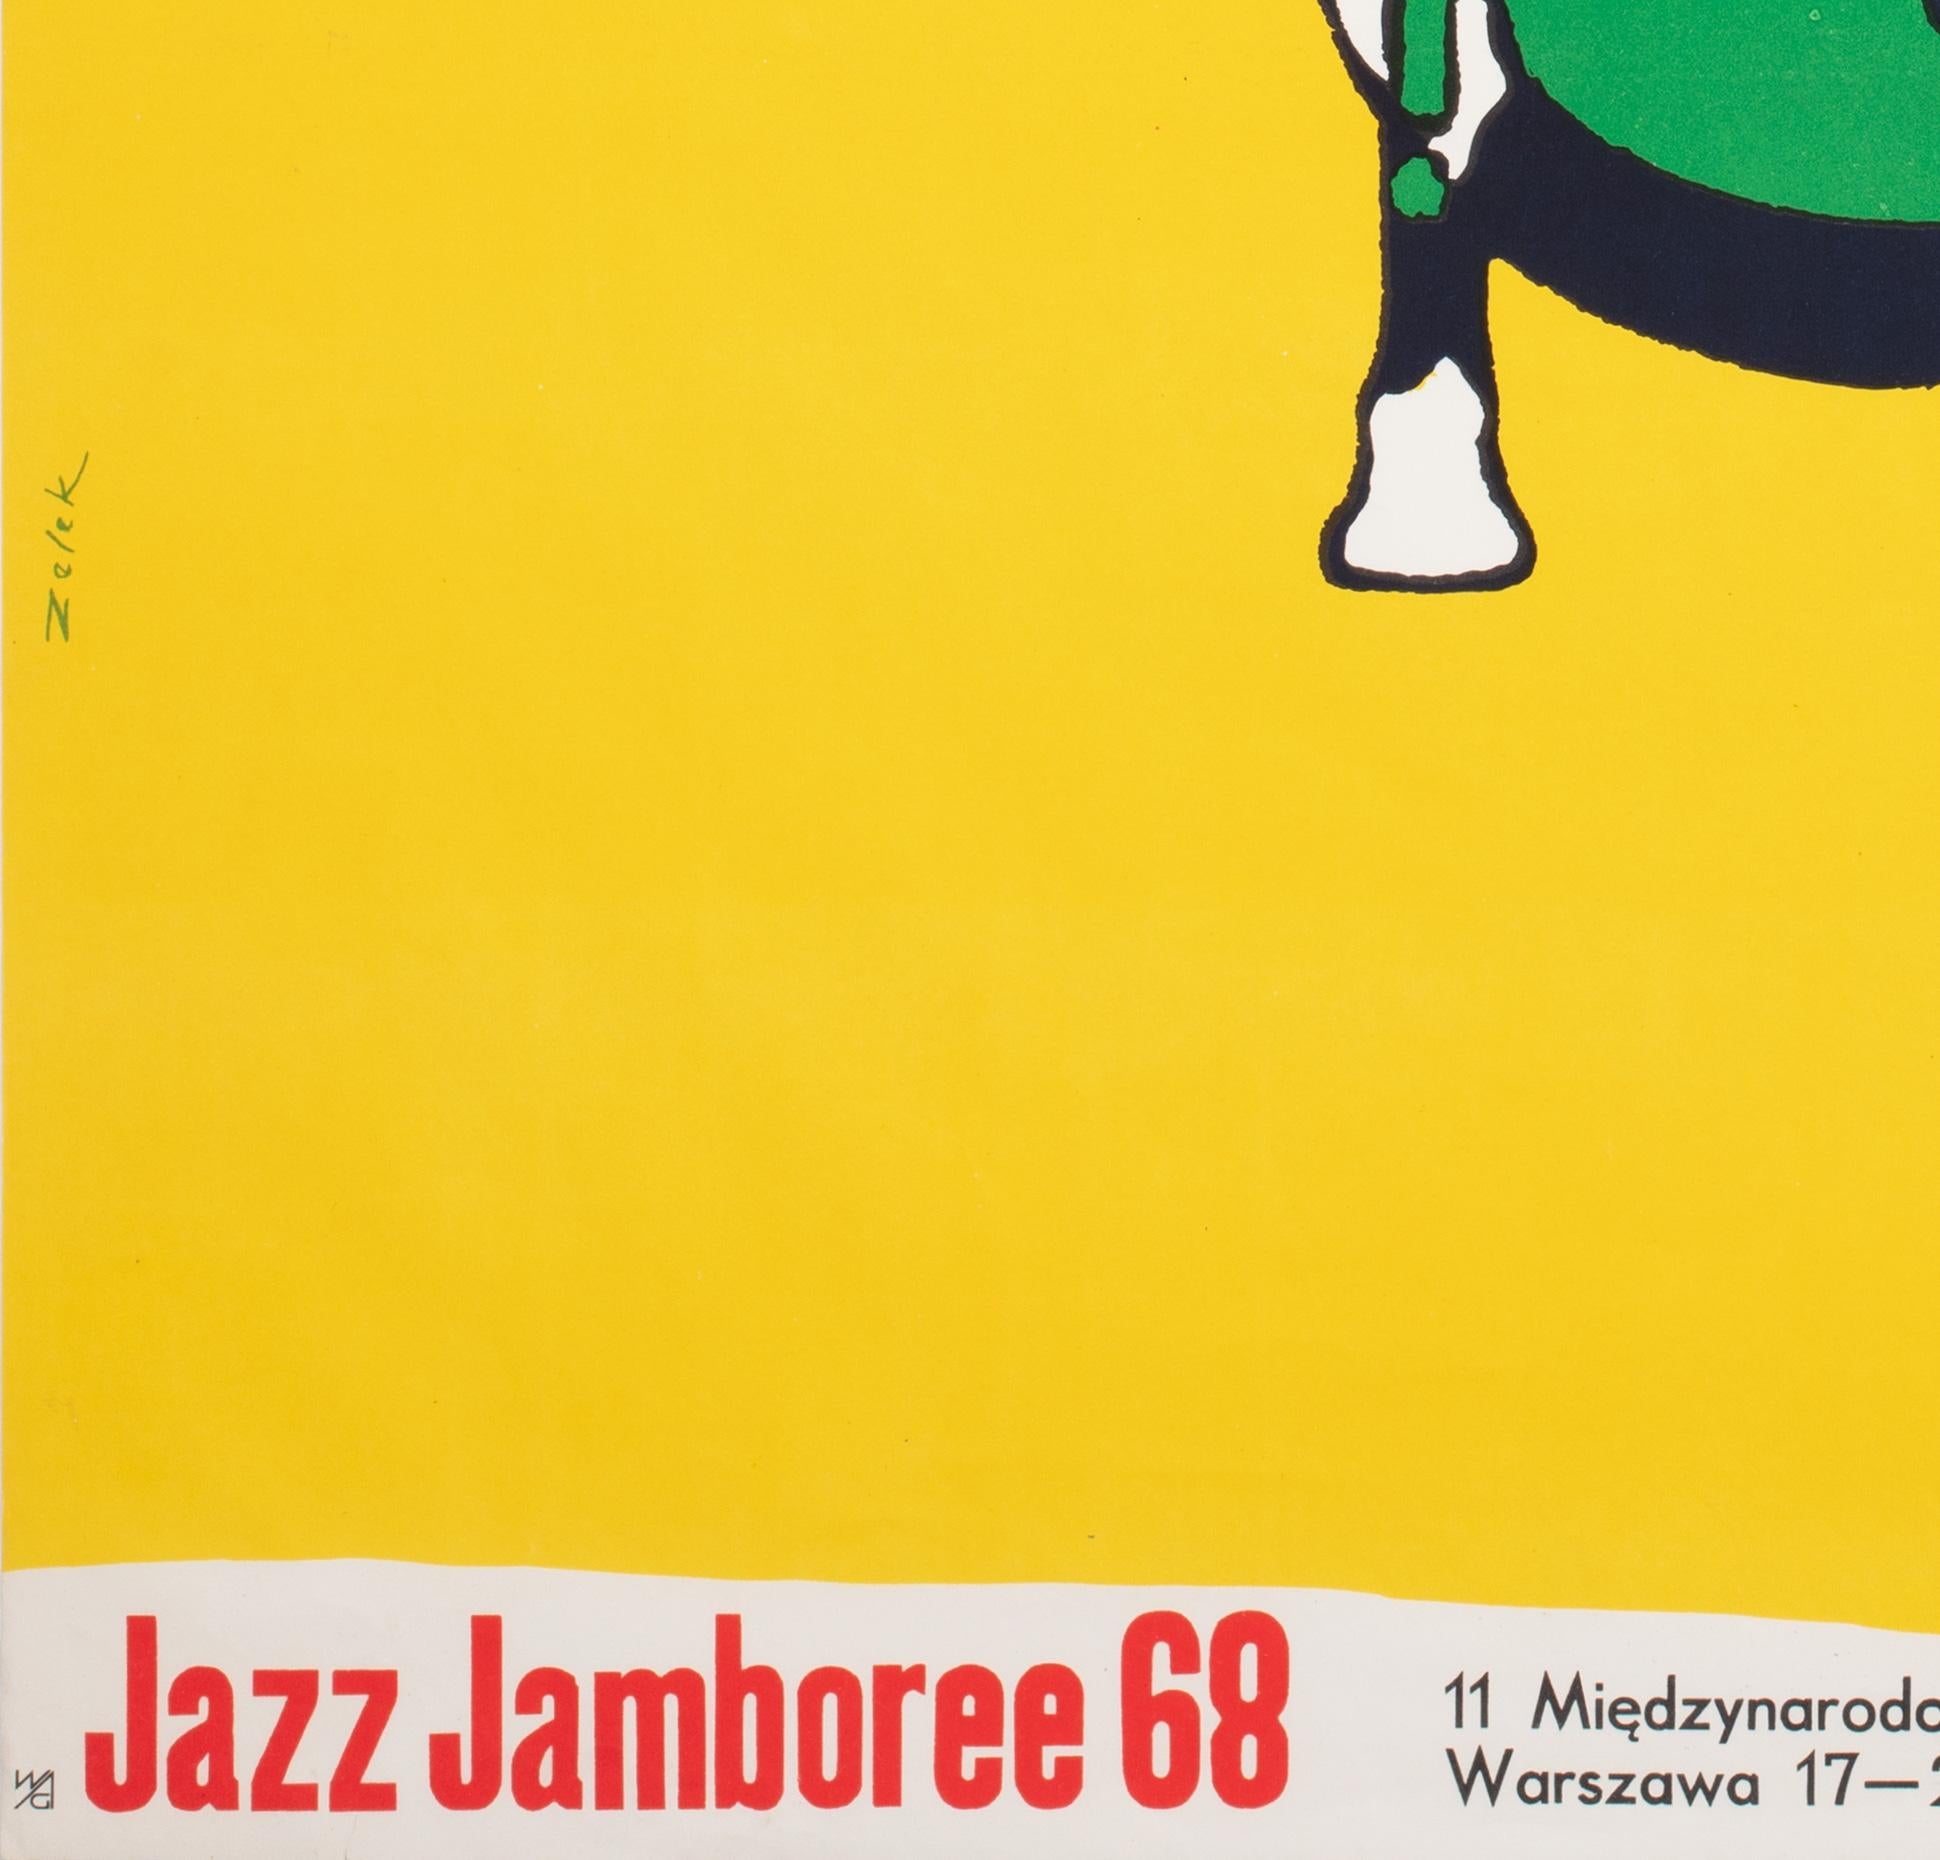 JAZZ JAMBOREE, Polish Music Festival Poster, BRONISLAW ZELEK, 1968 For Sale 2